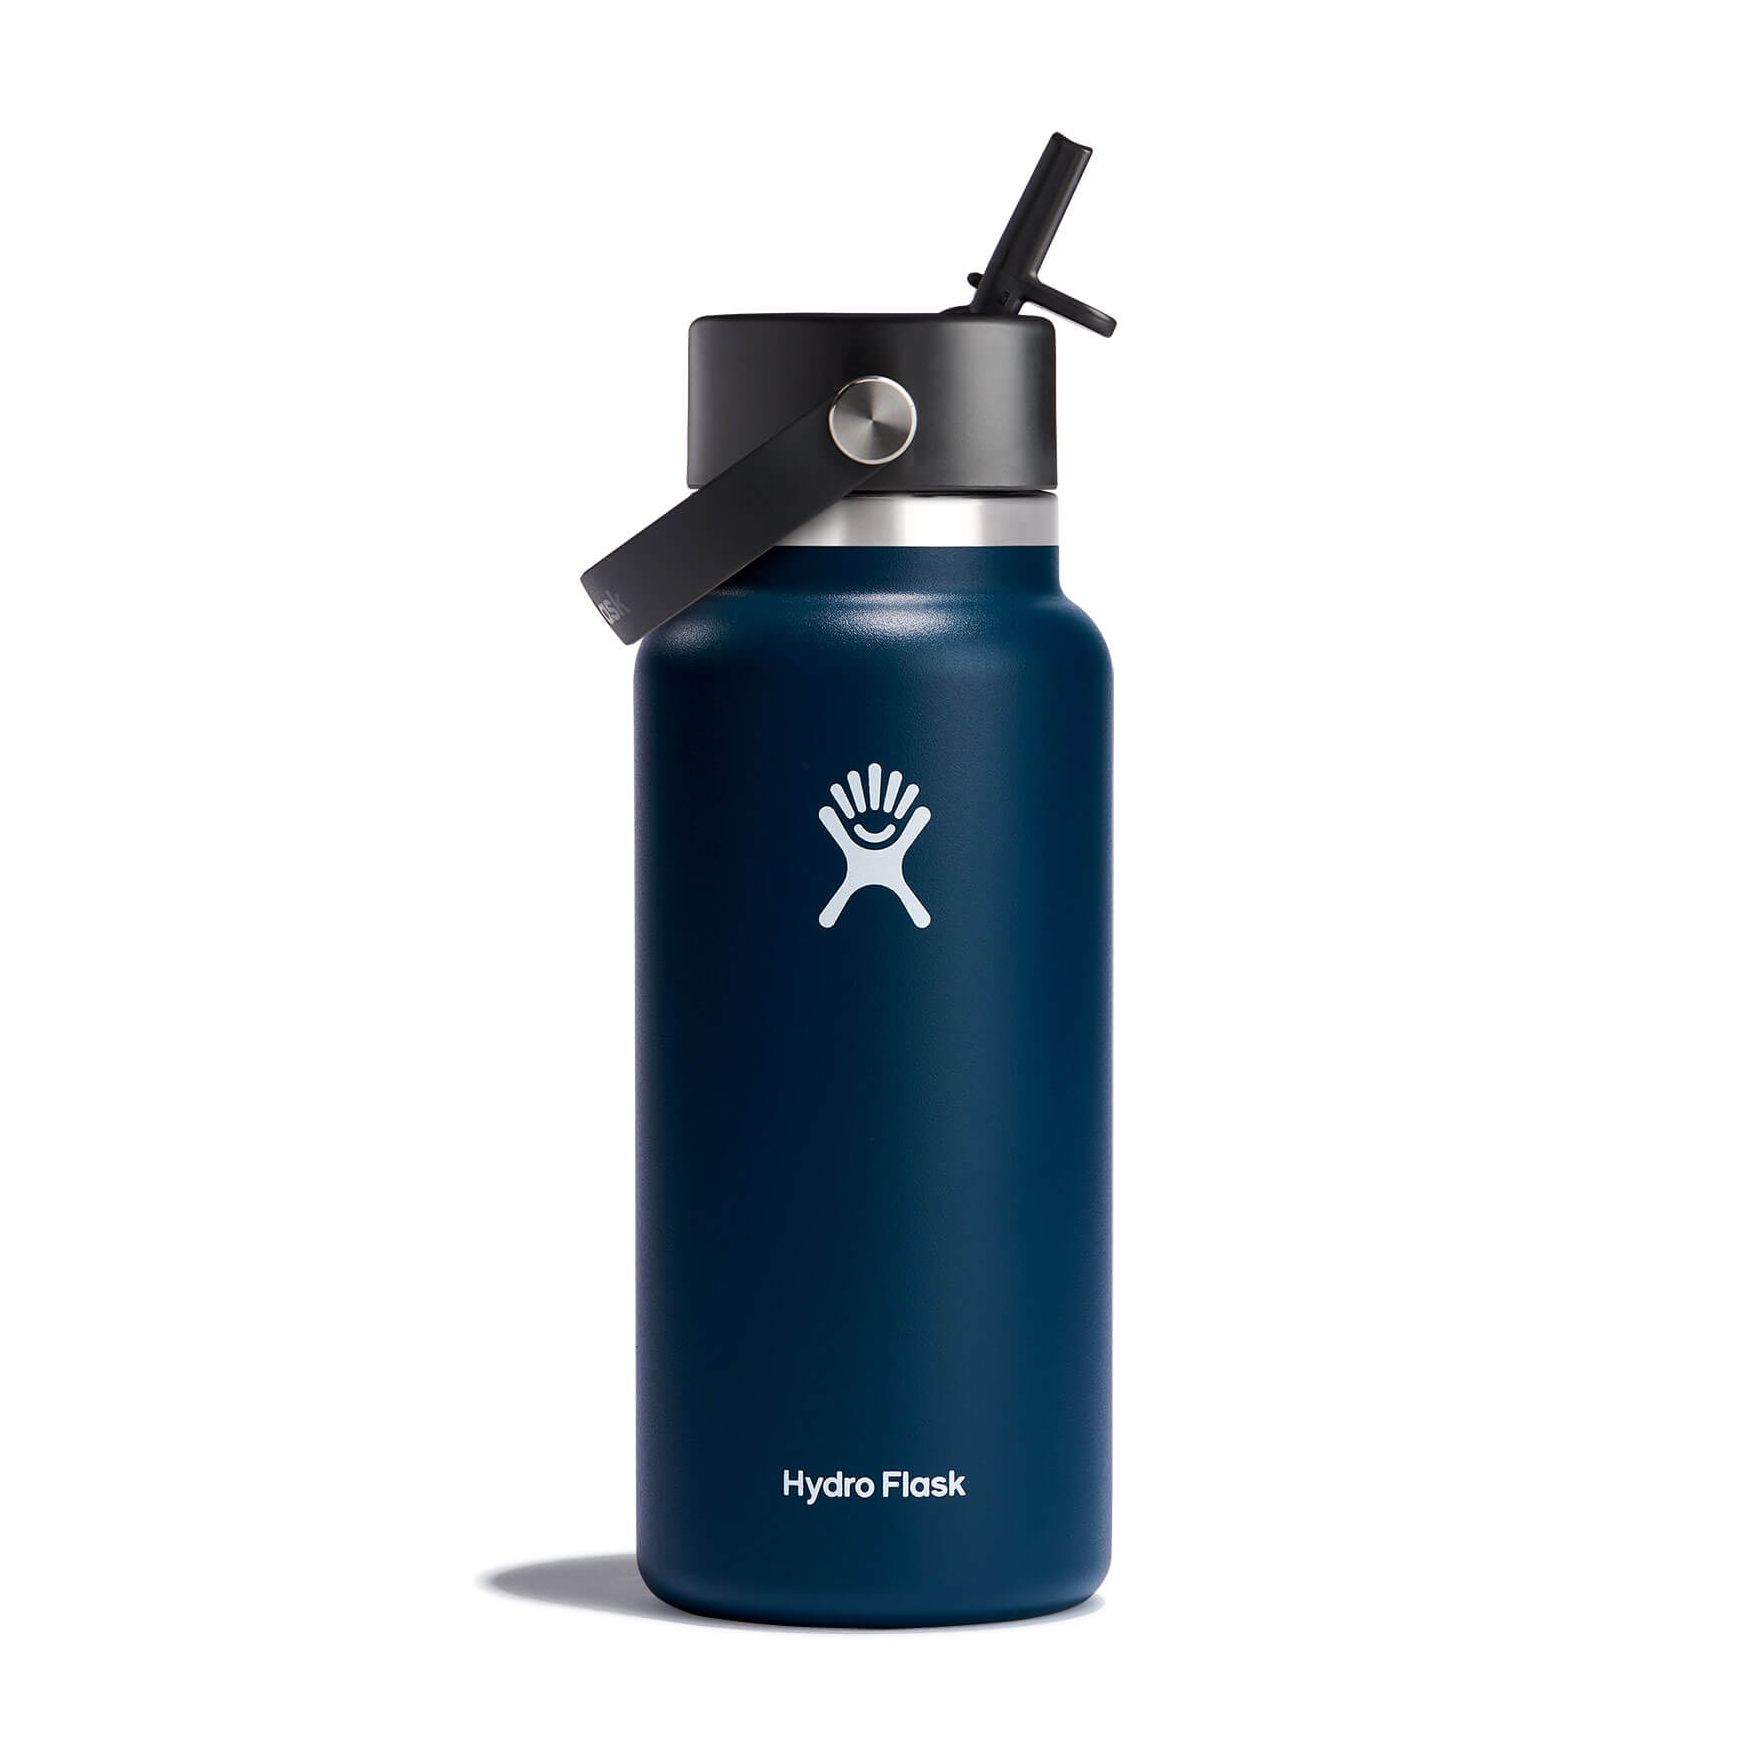 Hydro Flask 32 oz All Around Travel Tumbler (Indigo)